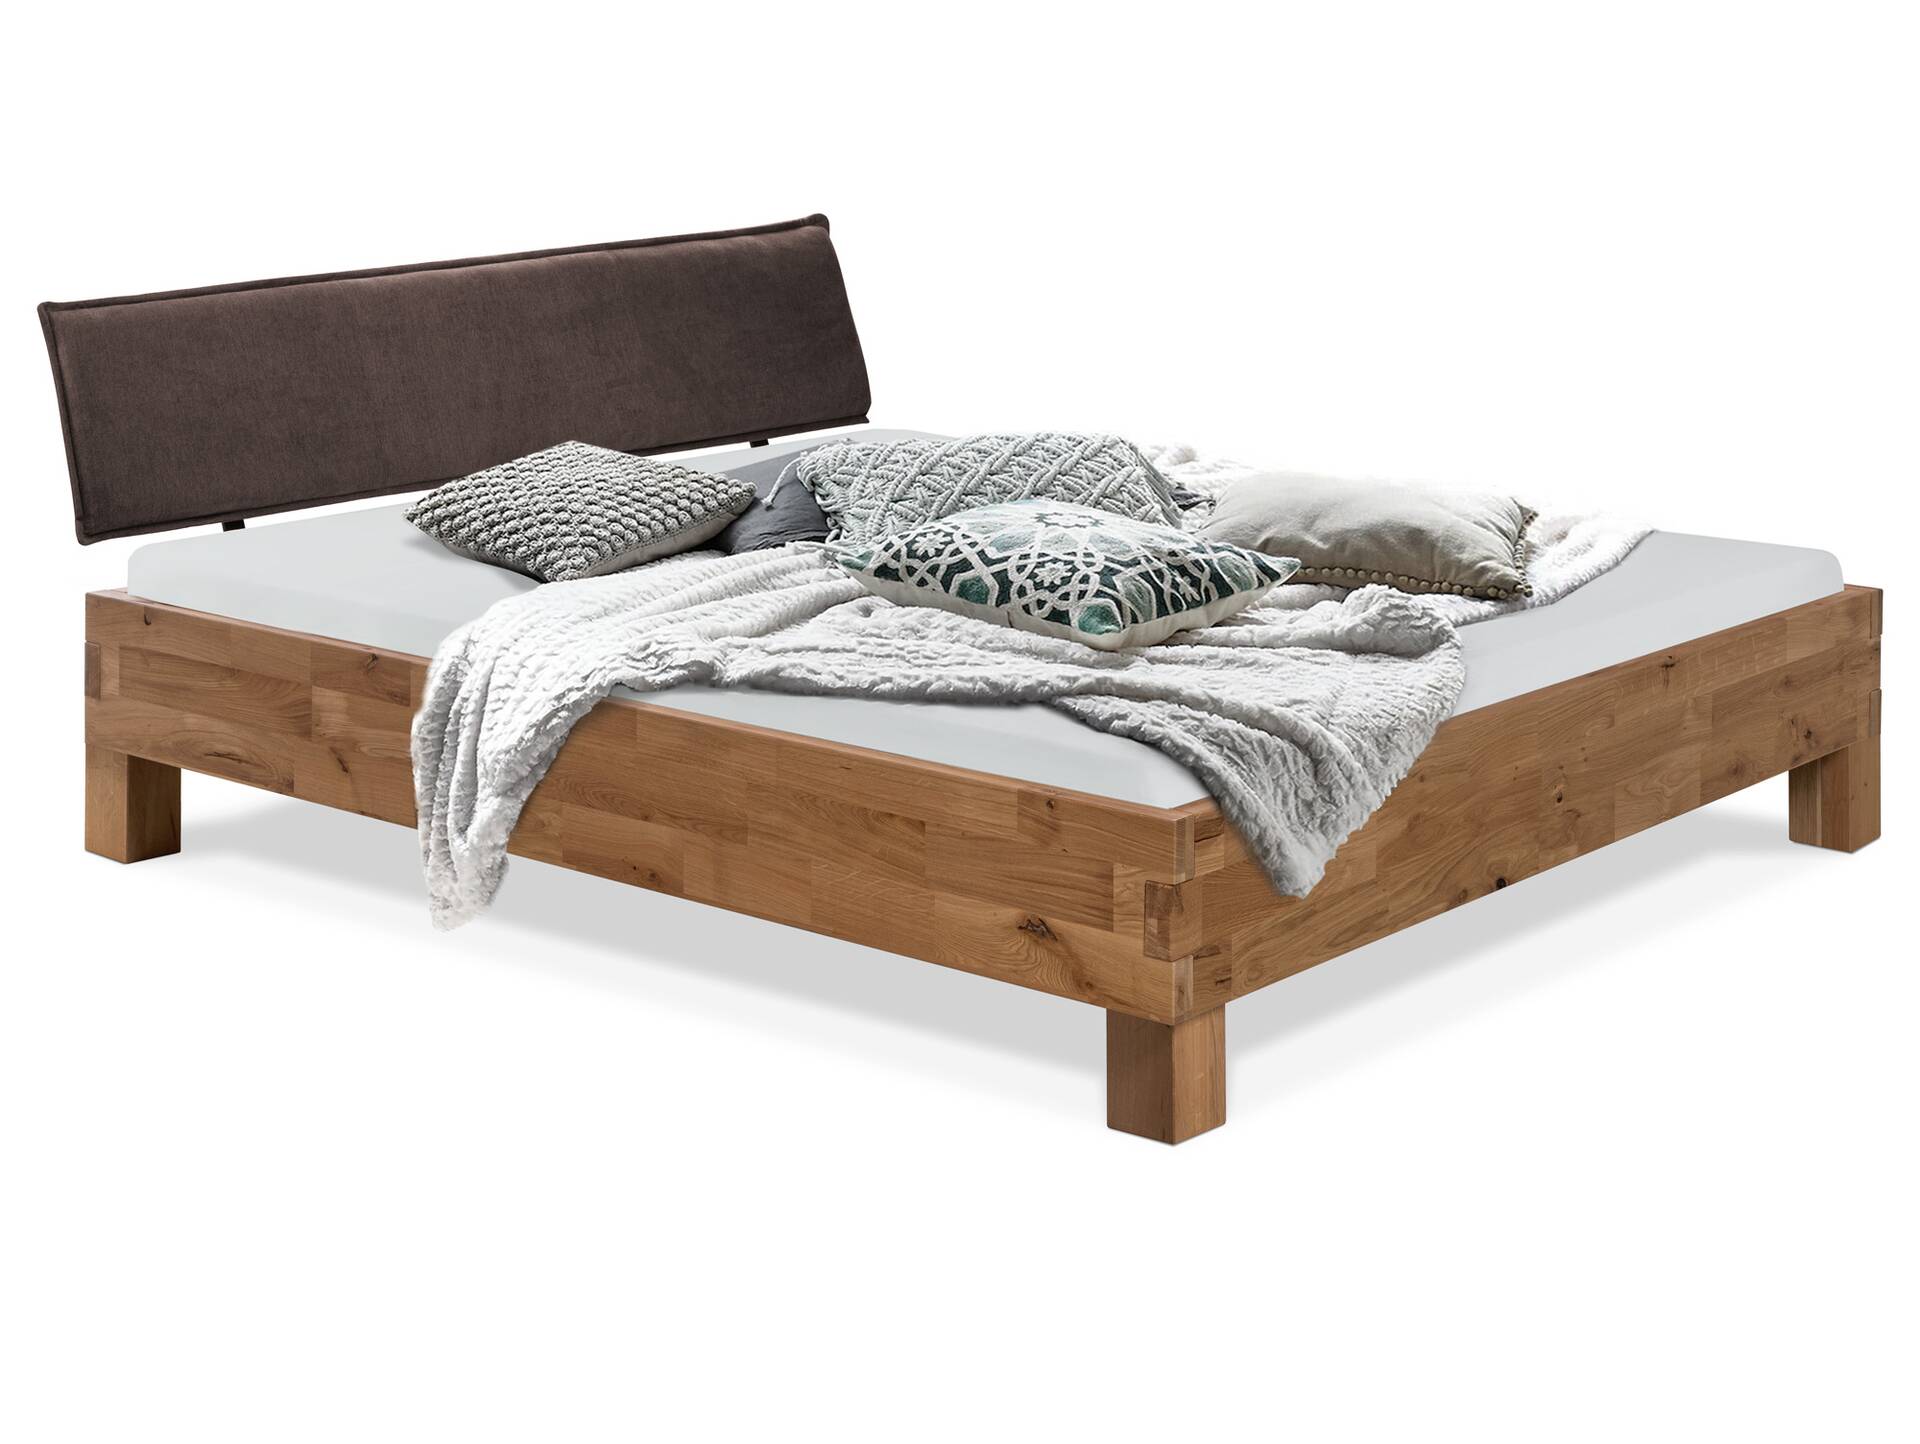 CORDINO 4-Fuß-Bett aus Eiche mit Polster-Kopfteil, Material Massivholz 160 x 200 cm | Eiche lackiert | Stoff Braun | gebürstet